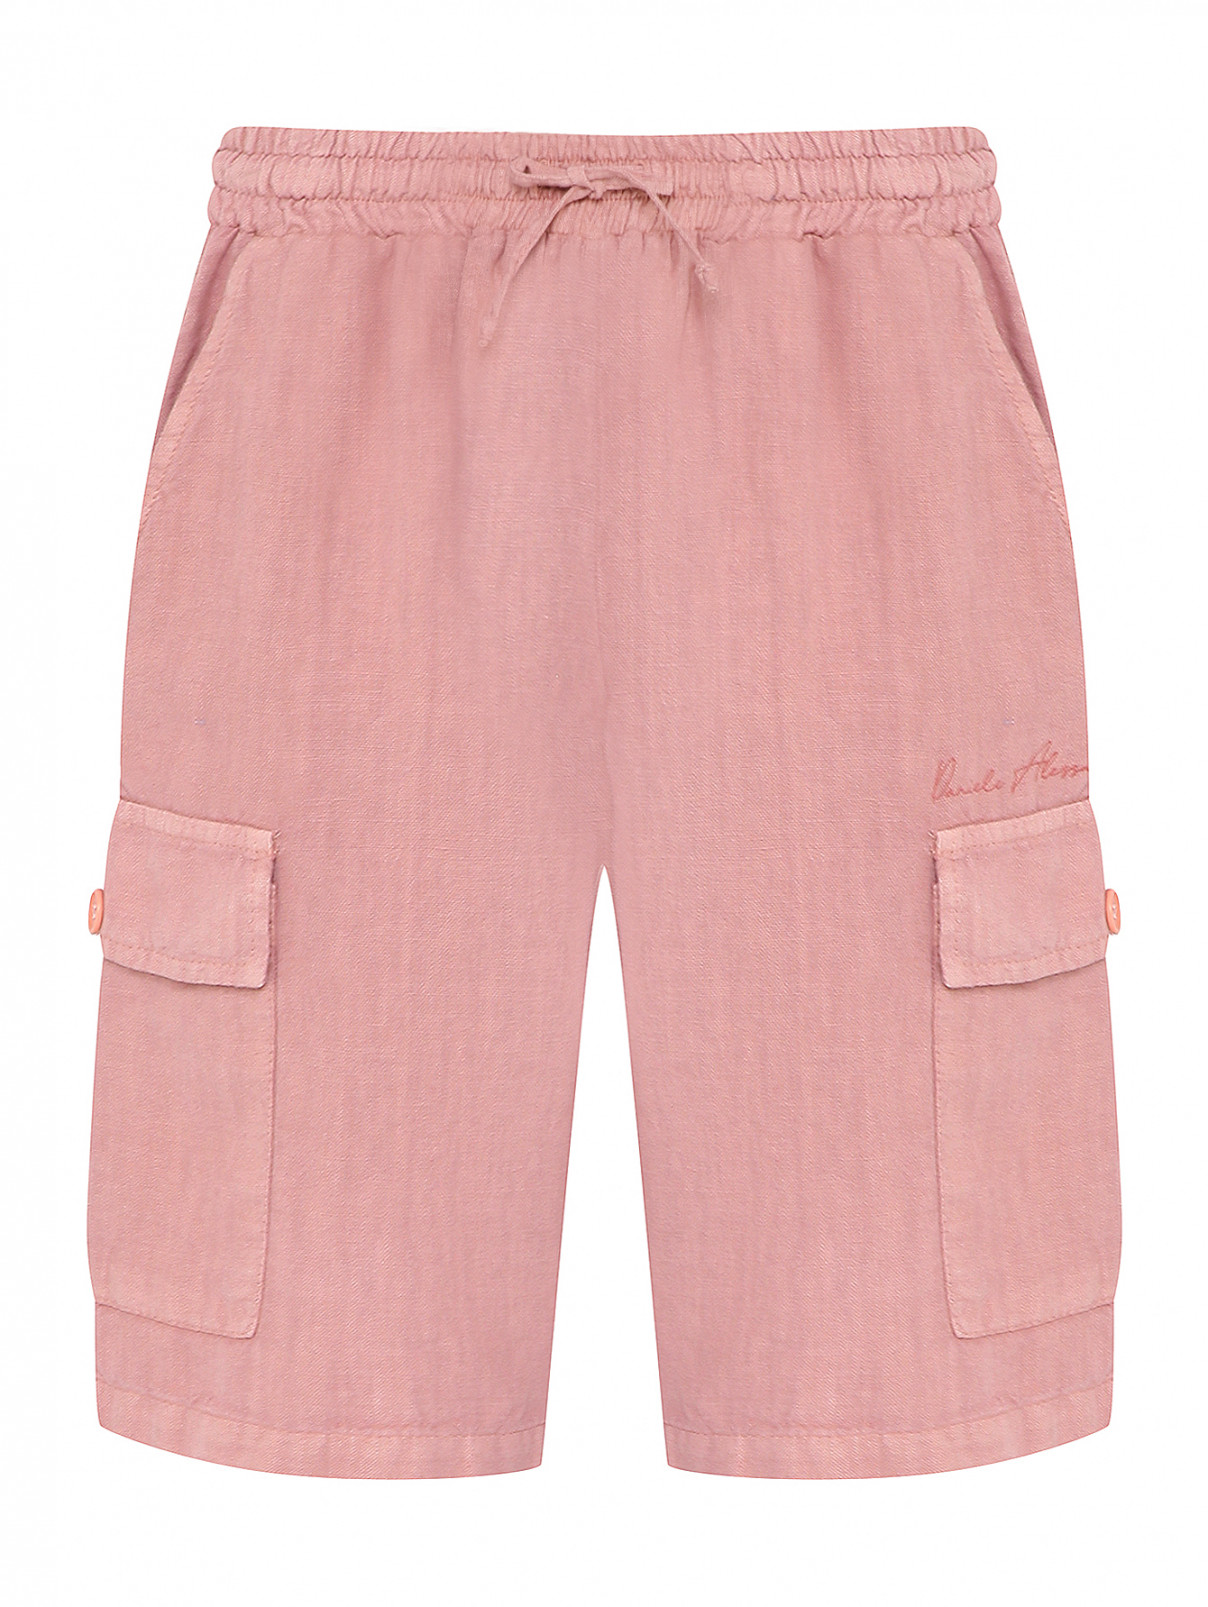 Льняные шорты на резинке Daniele Alessandrini  –  Общий вид  – Цвет:  Розовый